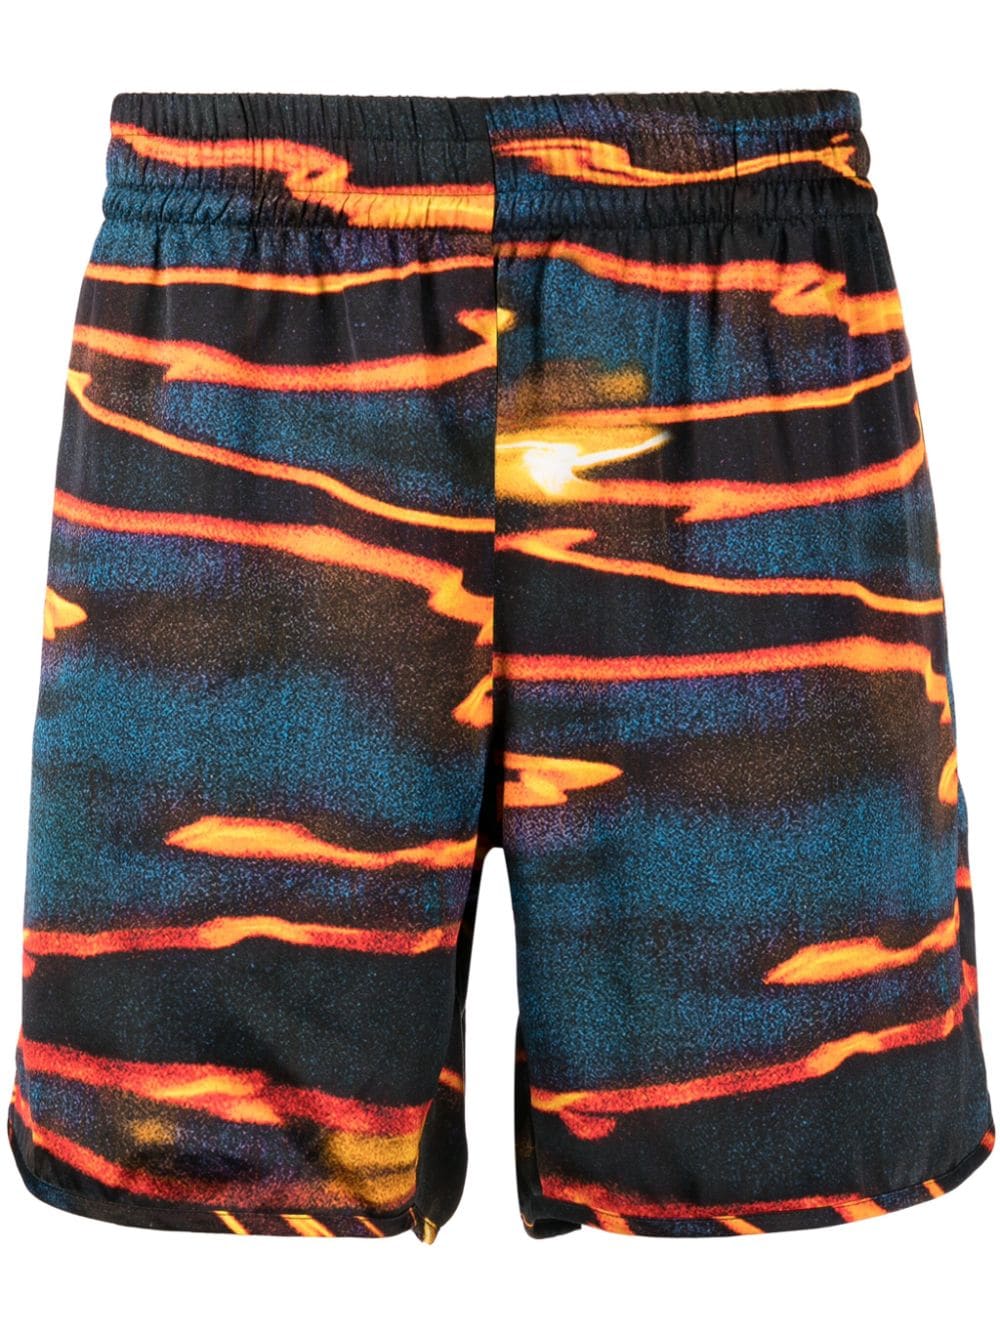 BLUE SKY INN Sunset Sea shorts - Multicolour